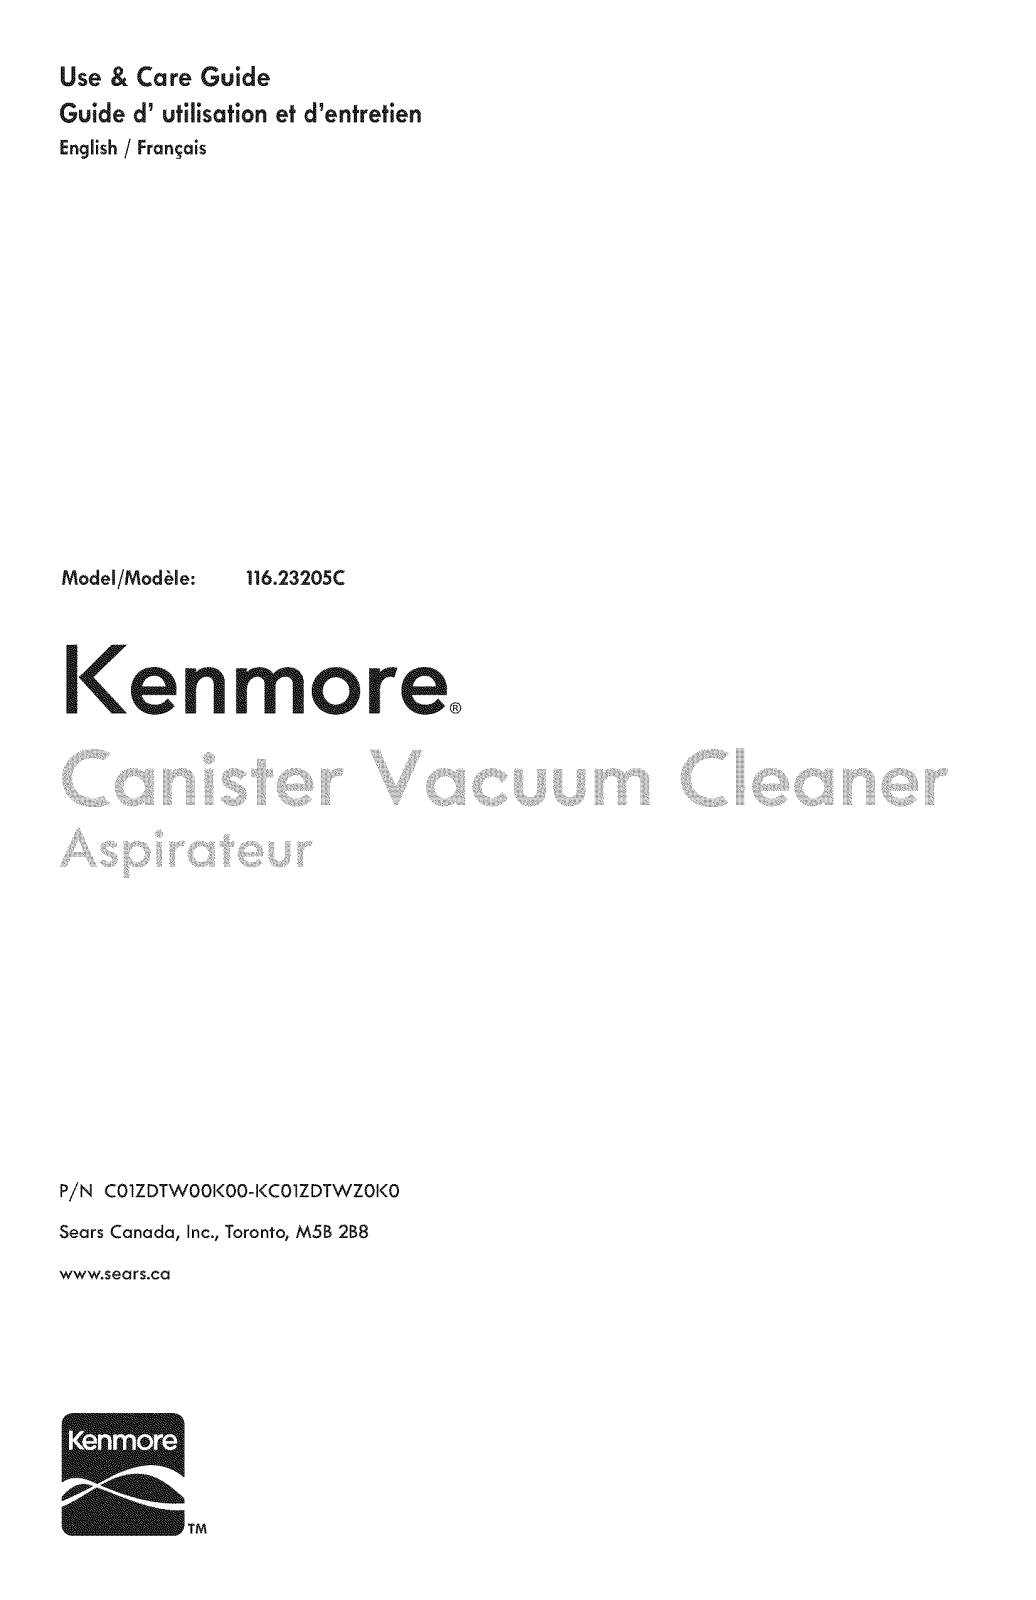 Kenmore 11653205111C, 11623205111C Owner’s Manual